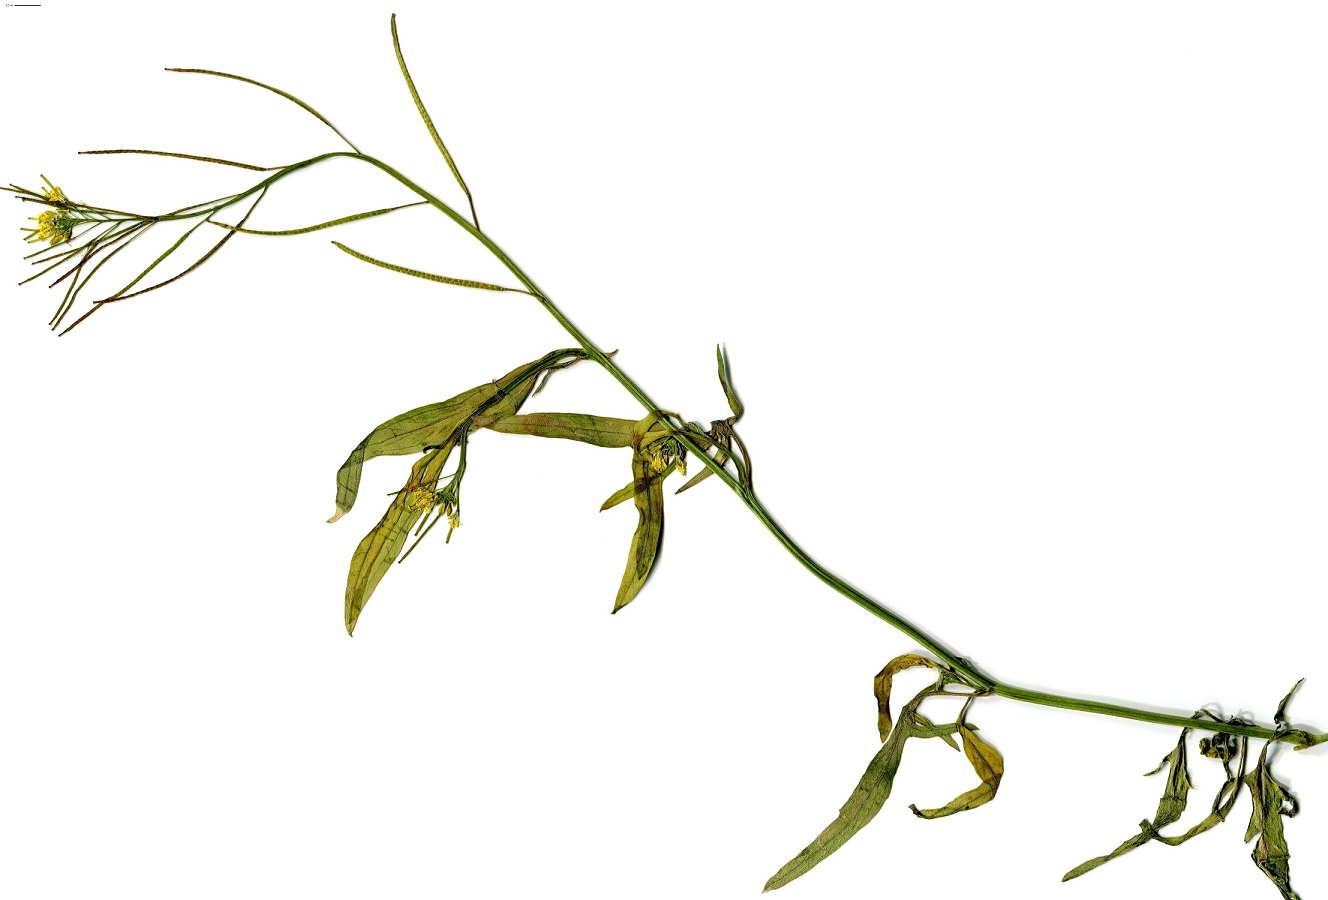 Sisymbrium orientale subsp. orientale (Brassicaceae)